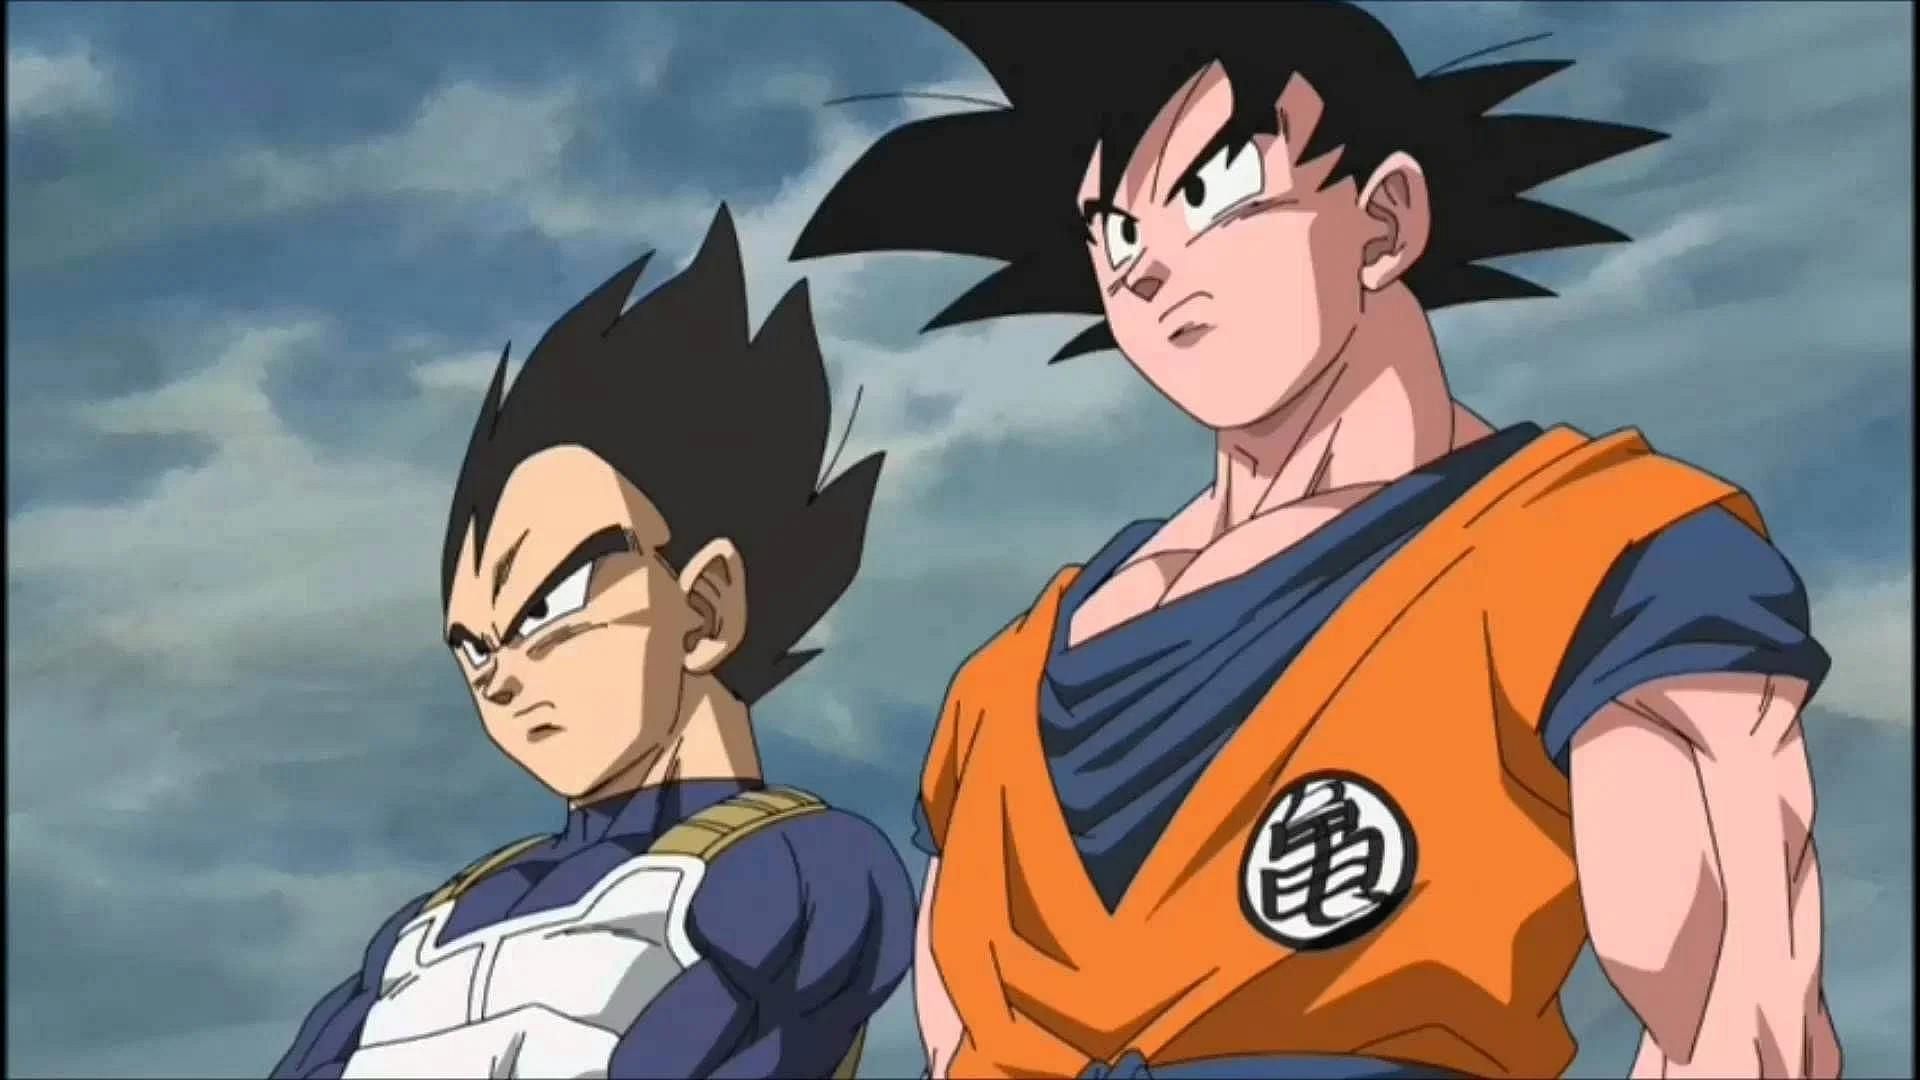 Goku and Vegeta (Image via Toei)